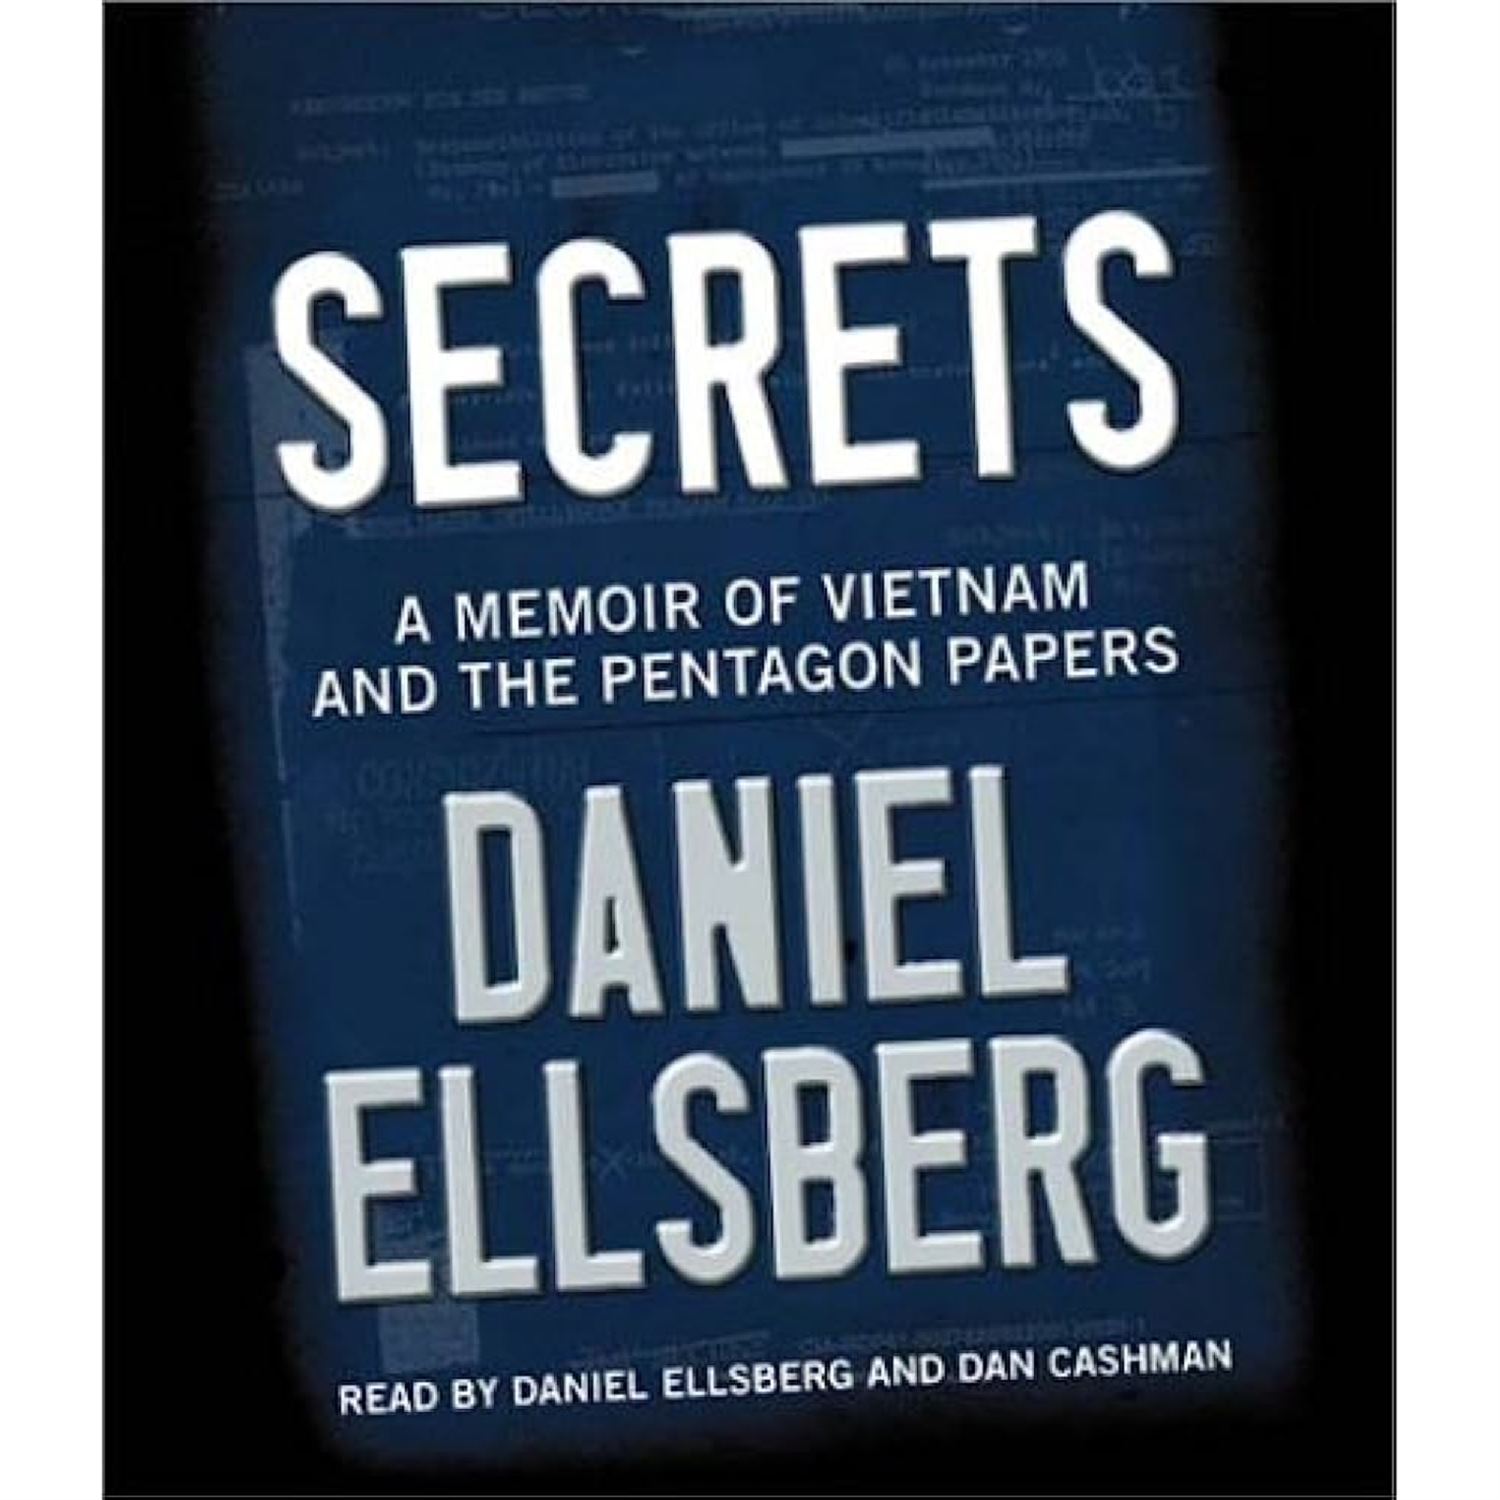 Daniel Ellsberg & The Pentagon Papers